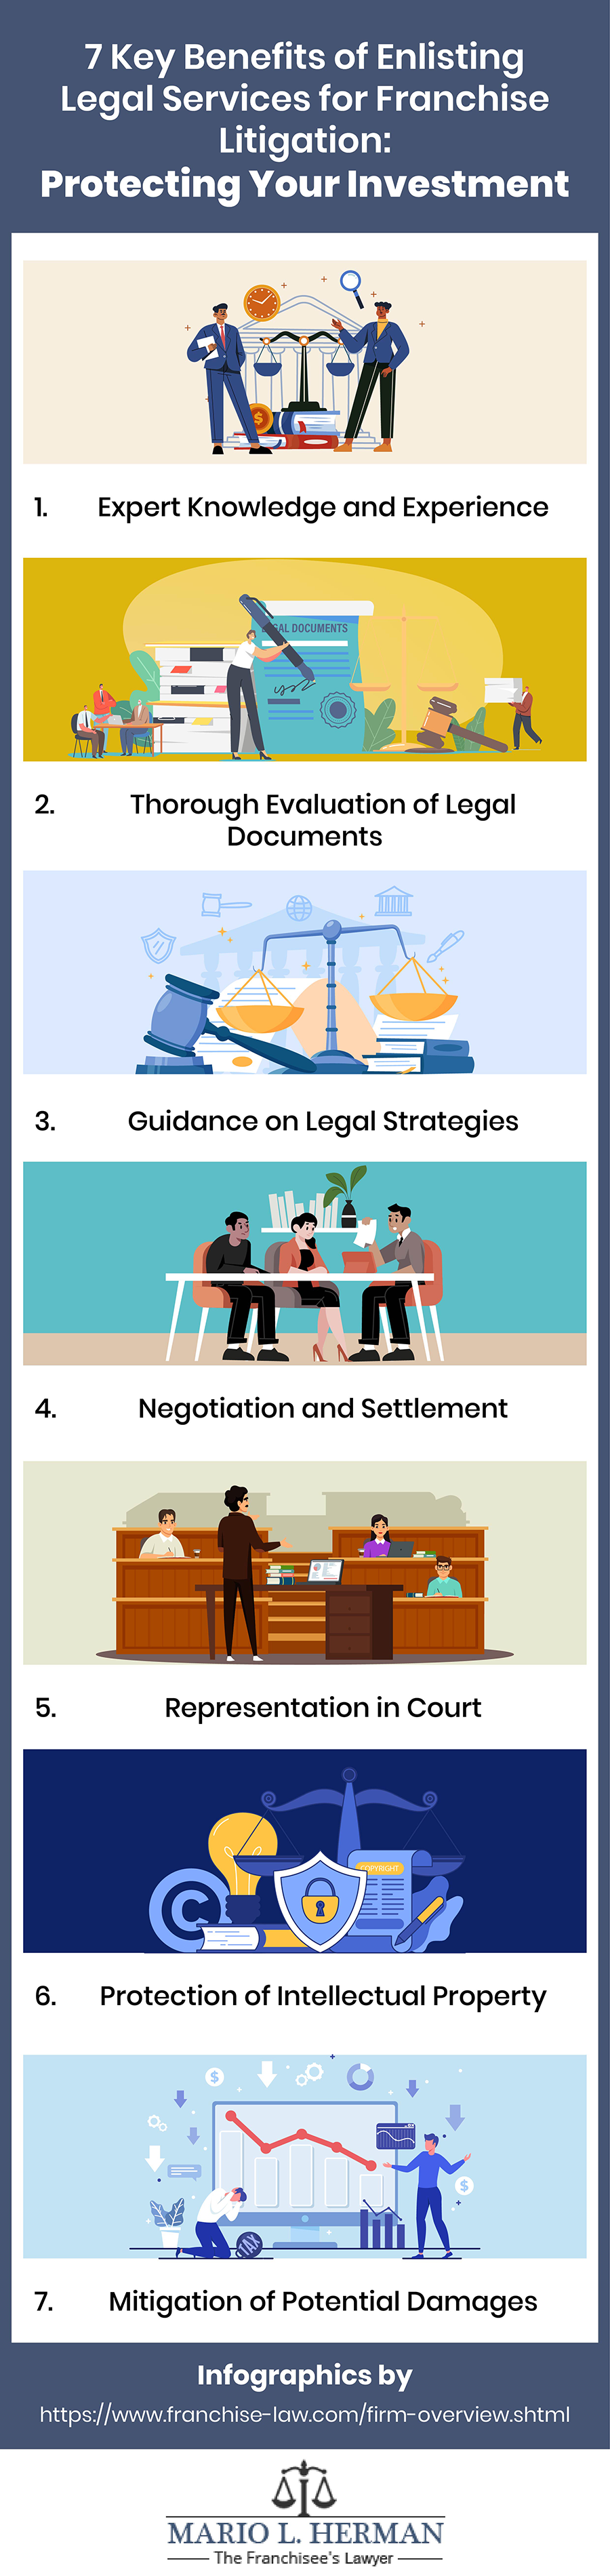 Benefits of Enlisting Legal Services for Franchise Litigation